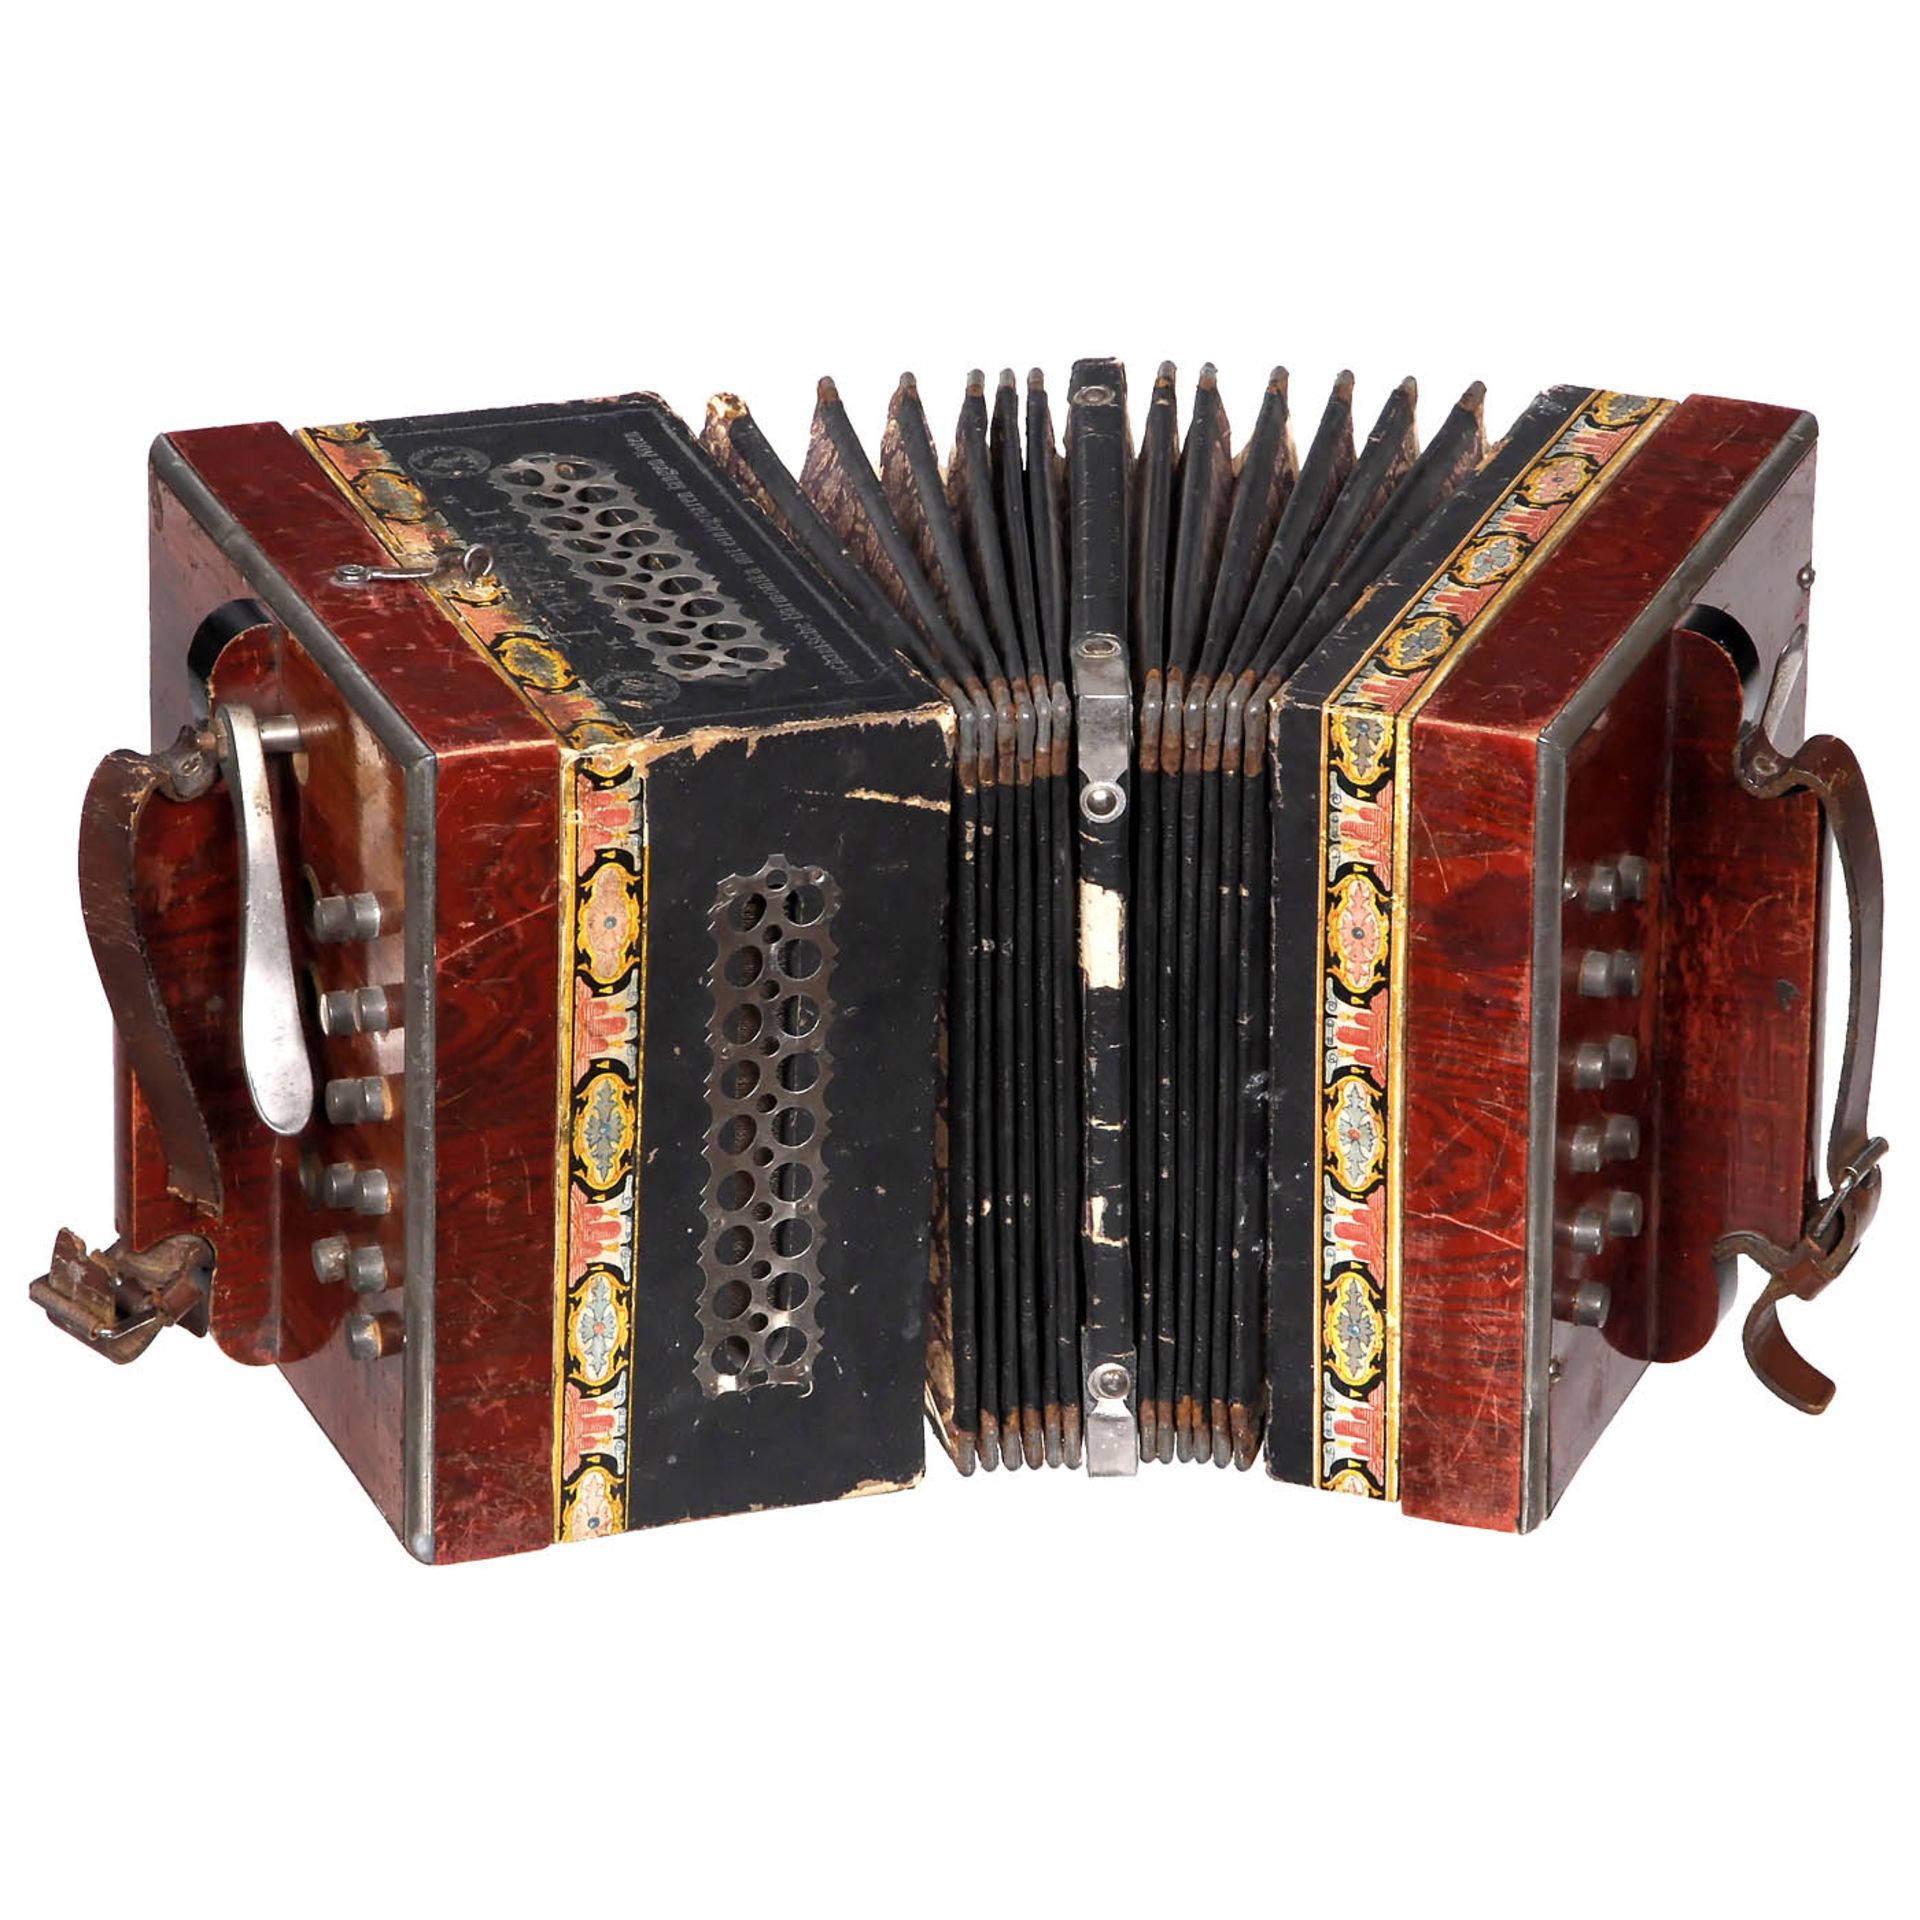 Selbstspielende Harmonika "Tanzbär", ab 1905 Hersteller: A. Zuleger, Leipzig. Mechanische Concertina